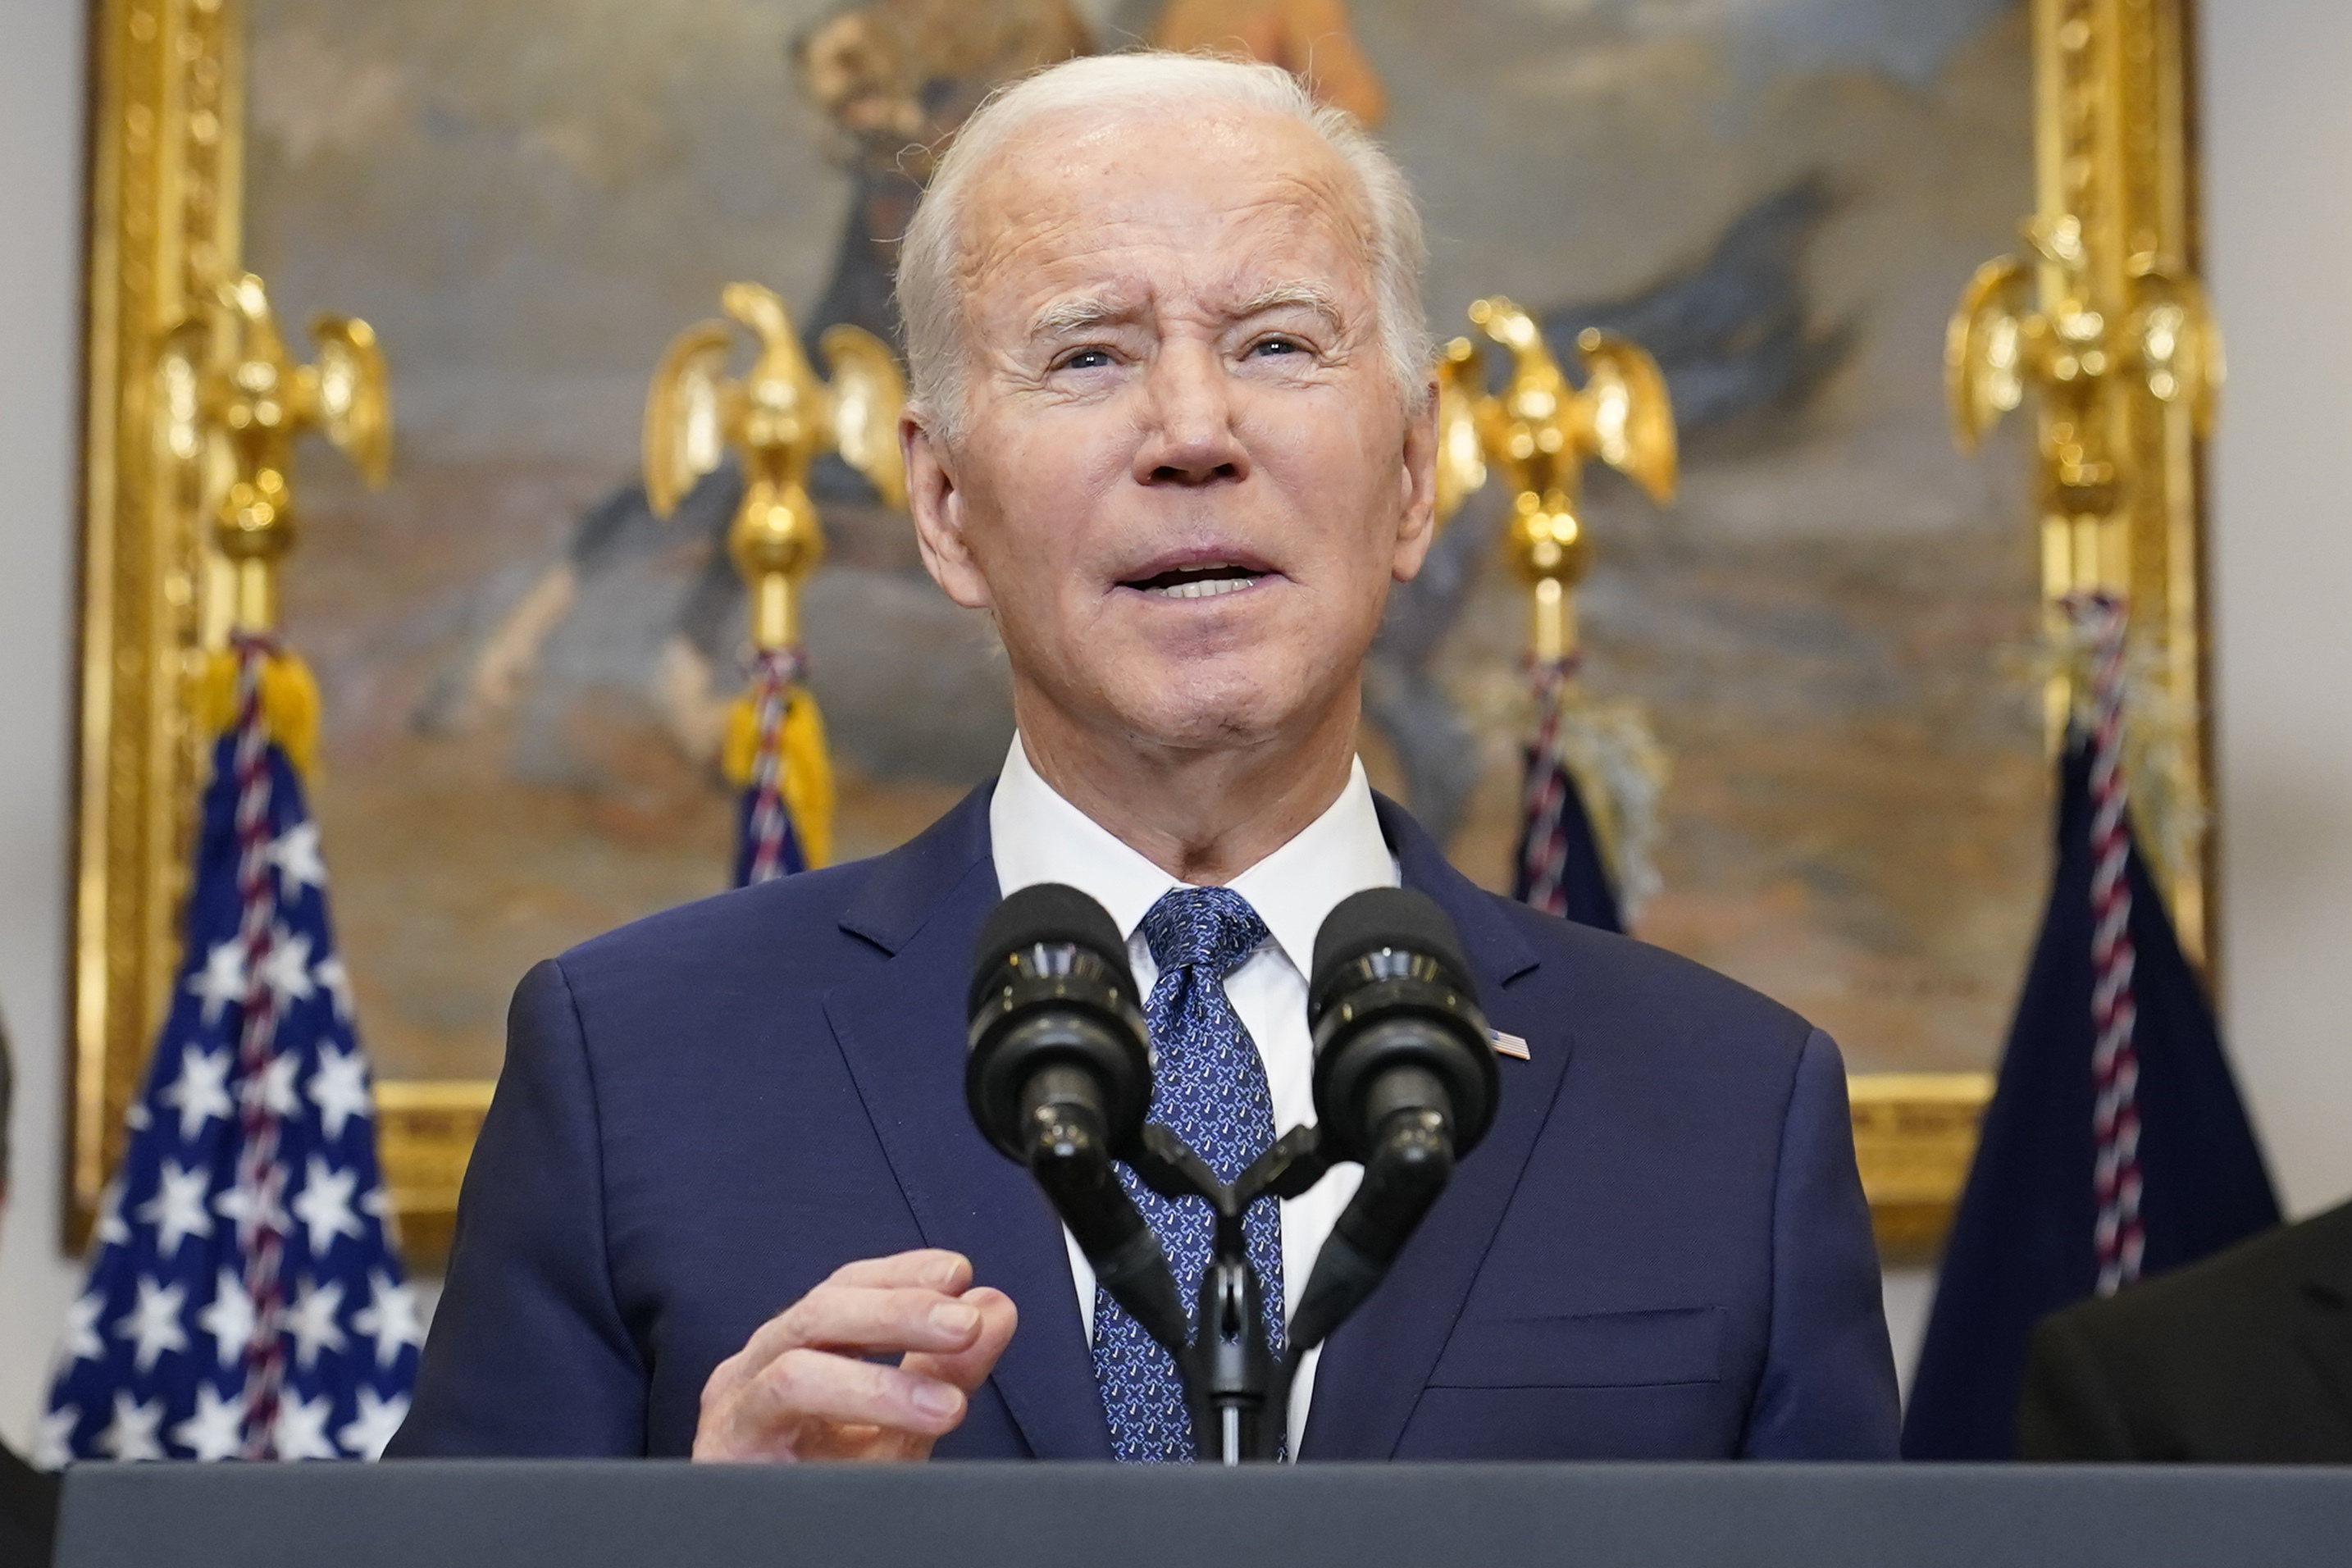 Joe Biden aseguró durante el discurso del estado de la Unión que "si China amenaza nuestra soberanía, actuaremos para proteger nuestro país" (AP)